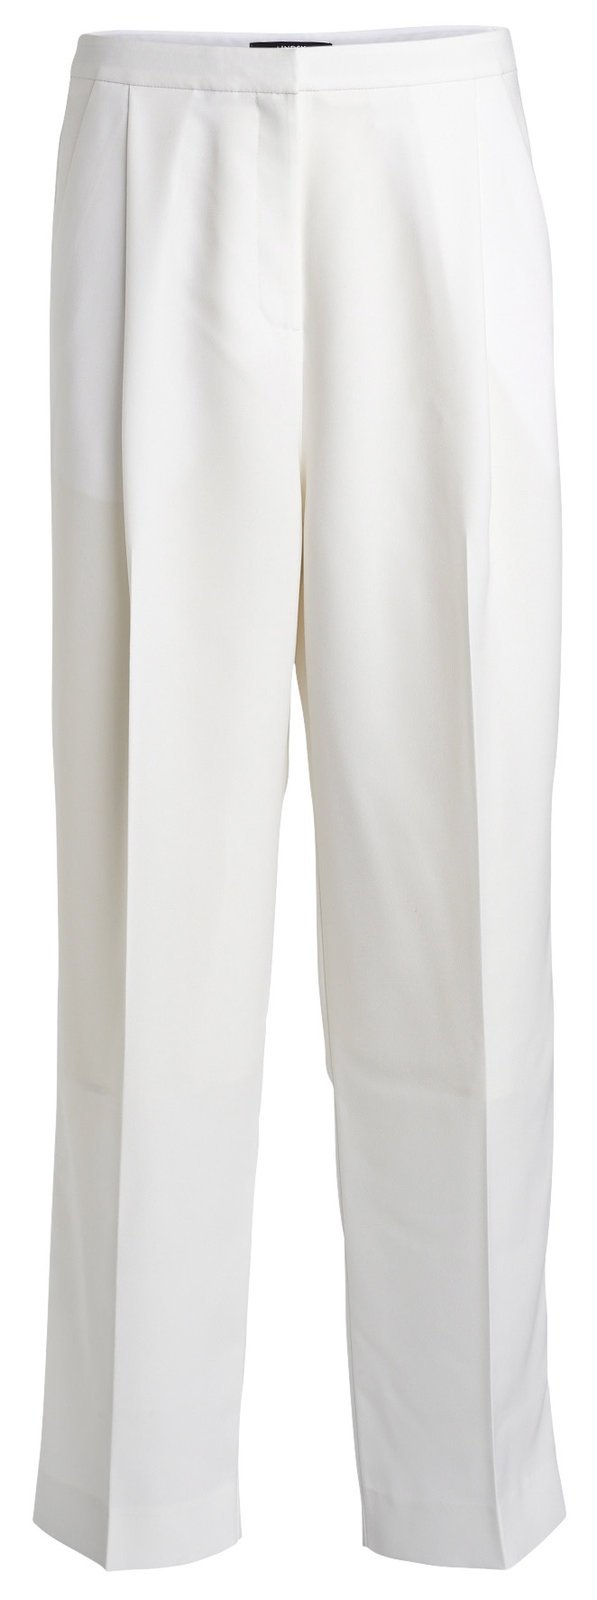 Rovné - Bílé kalhoty s puky, Lindex, 999 Kč